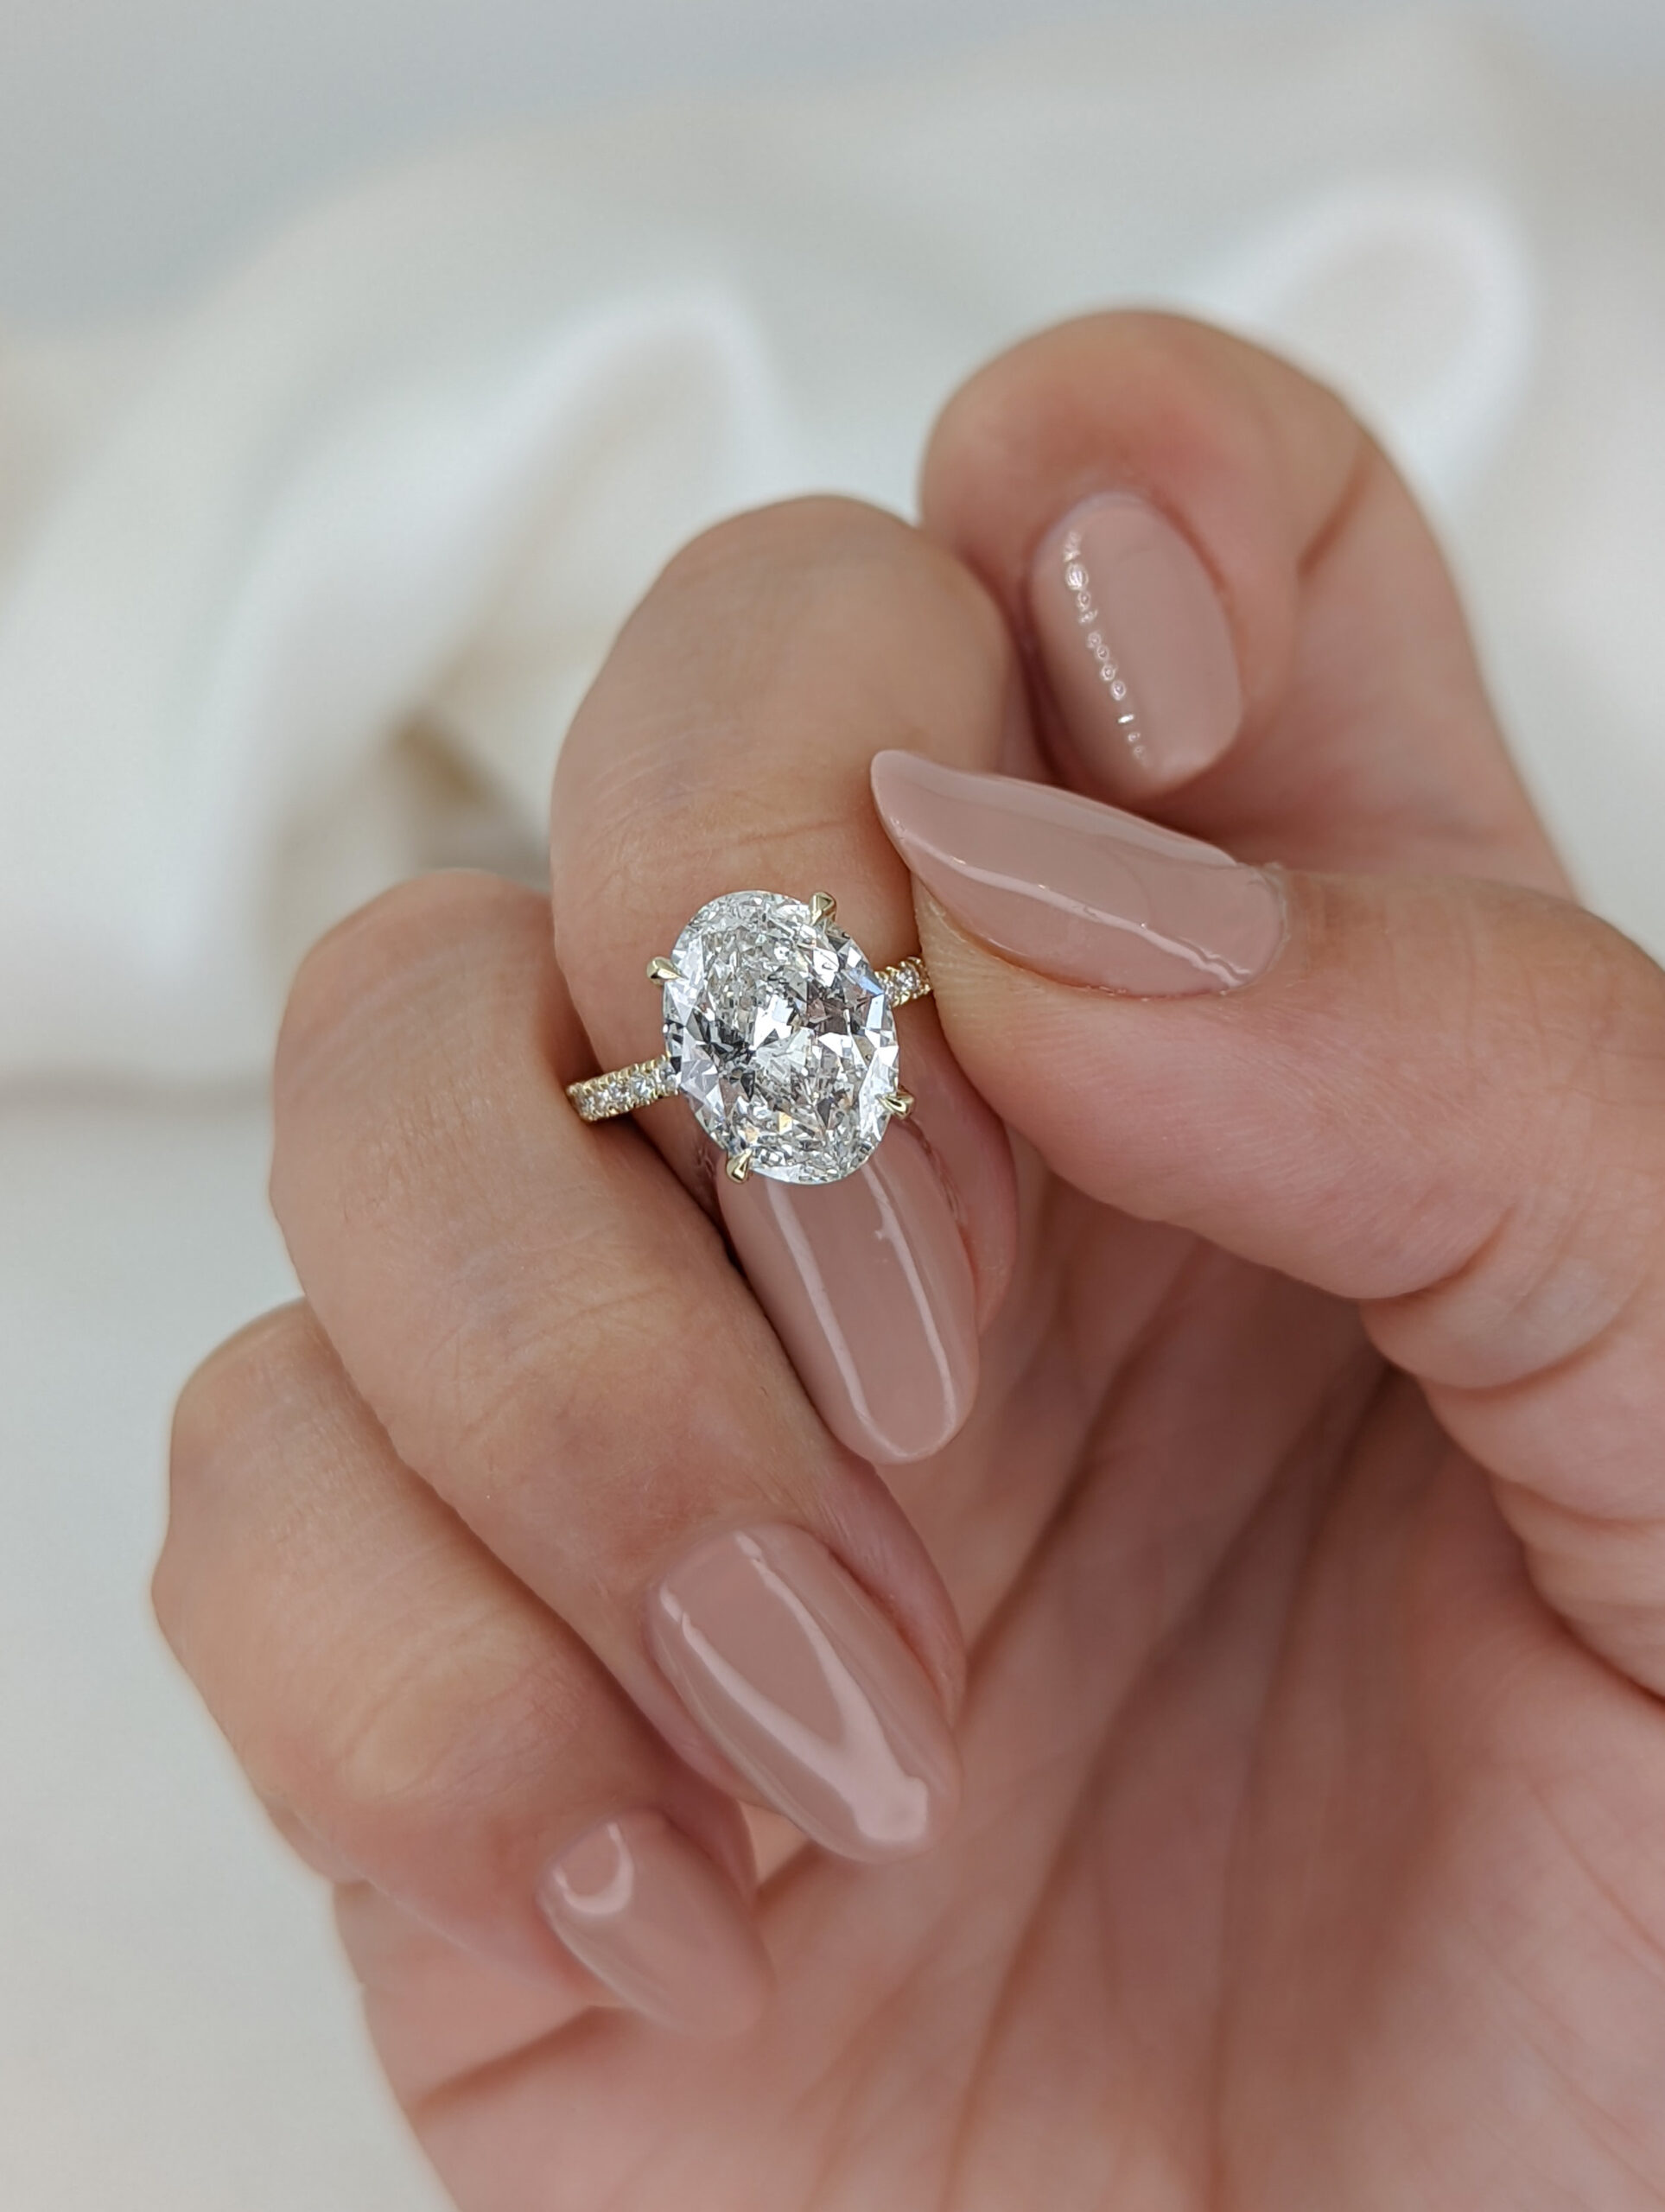 Buy Oval Shaped Diamond Engagement Ring, 2 Carat Oval Shape, 14k White Gold Diamond  Ring, Oval Diamond Ring, Halo Diamond Ring, Engagement Ring Online in India  - Etsy